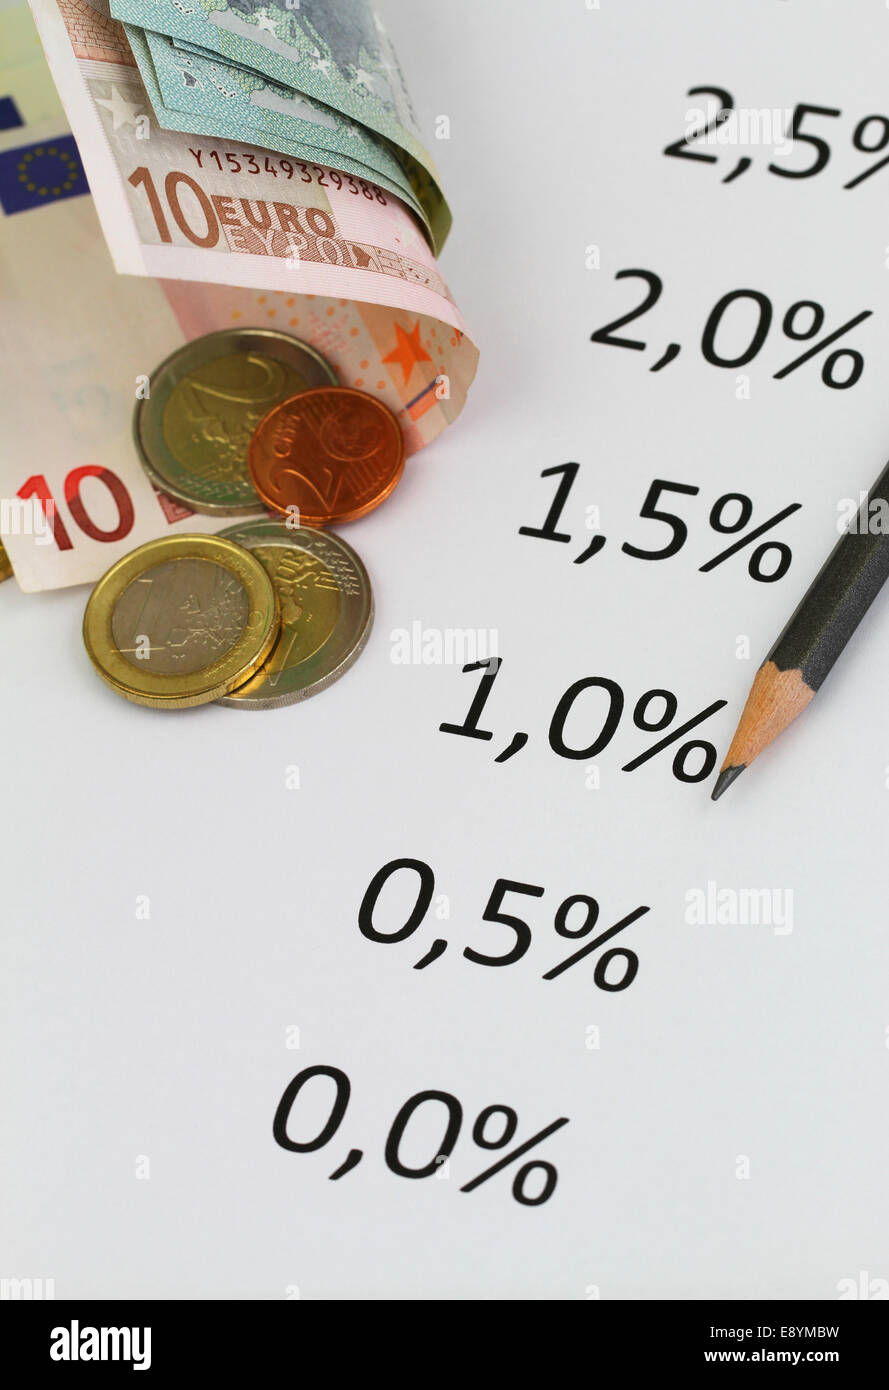 Auf Blatt Papier und Euro-Münzen aufgeführten Zinssätze Stockfoto